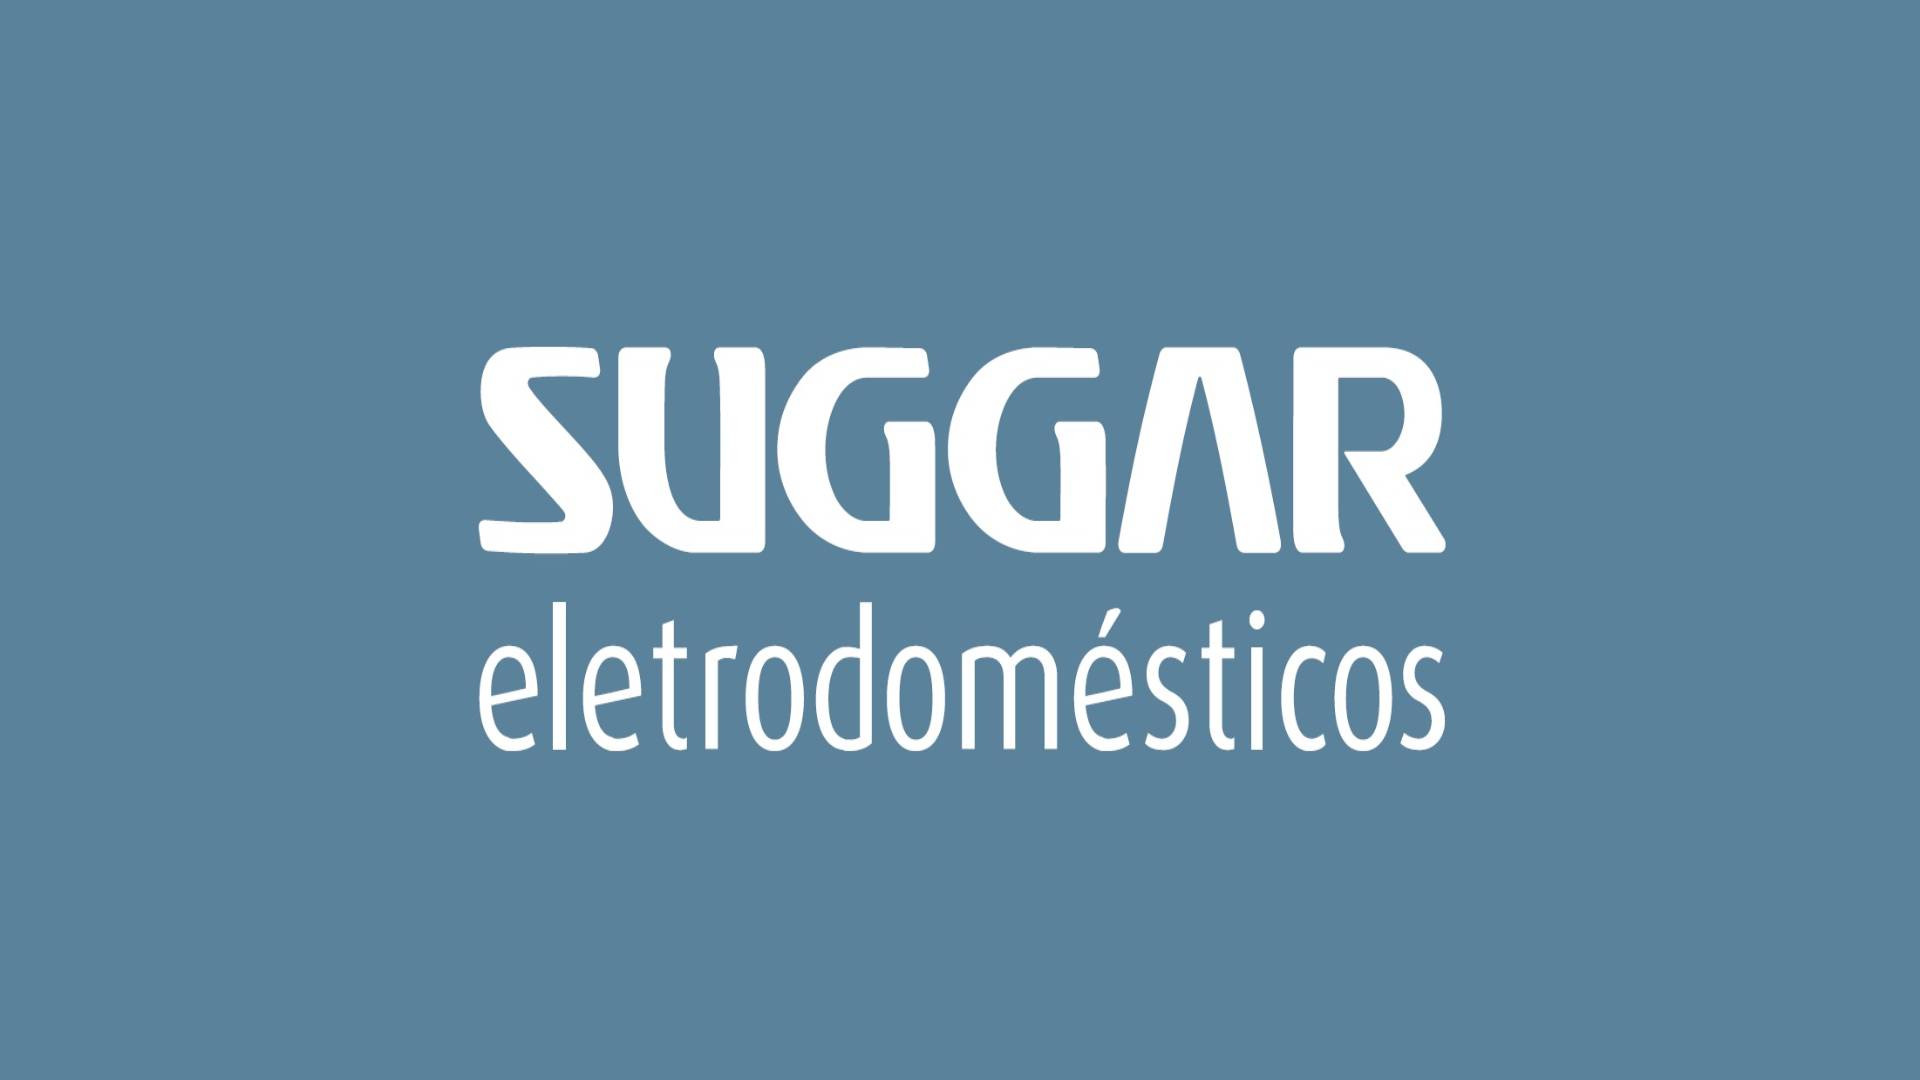 Suggar logo